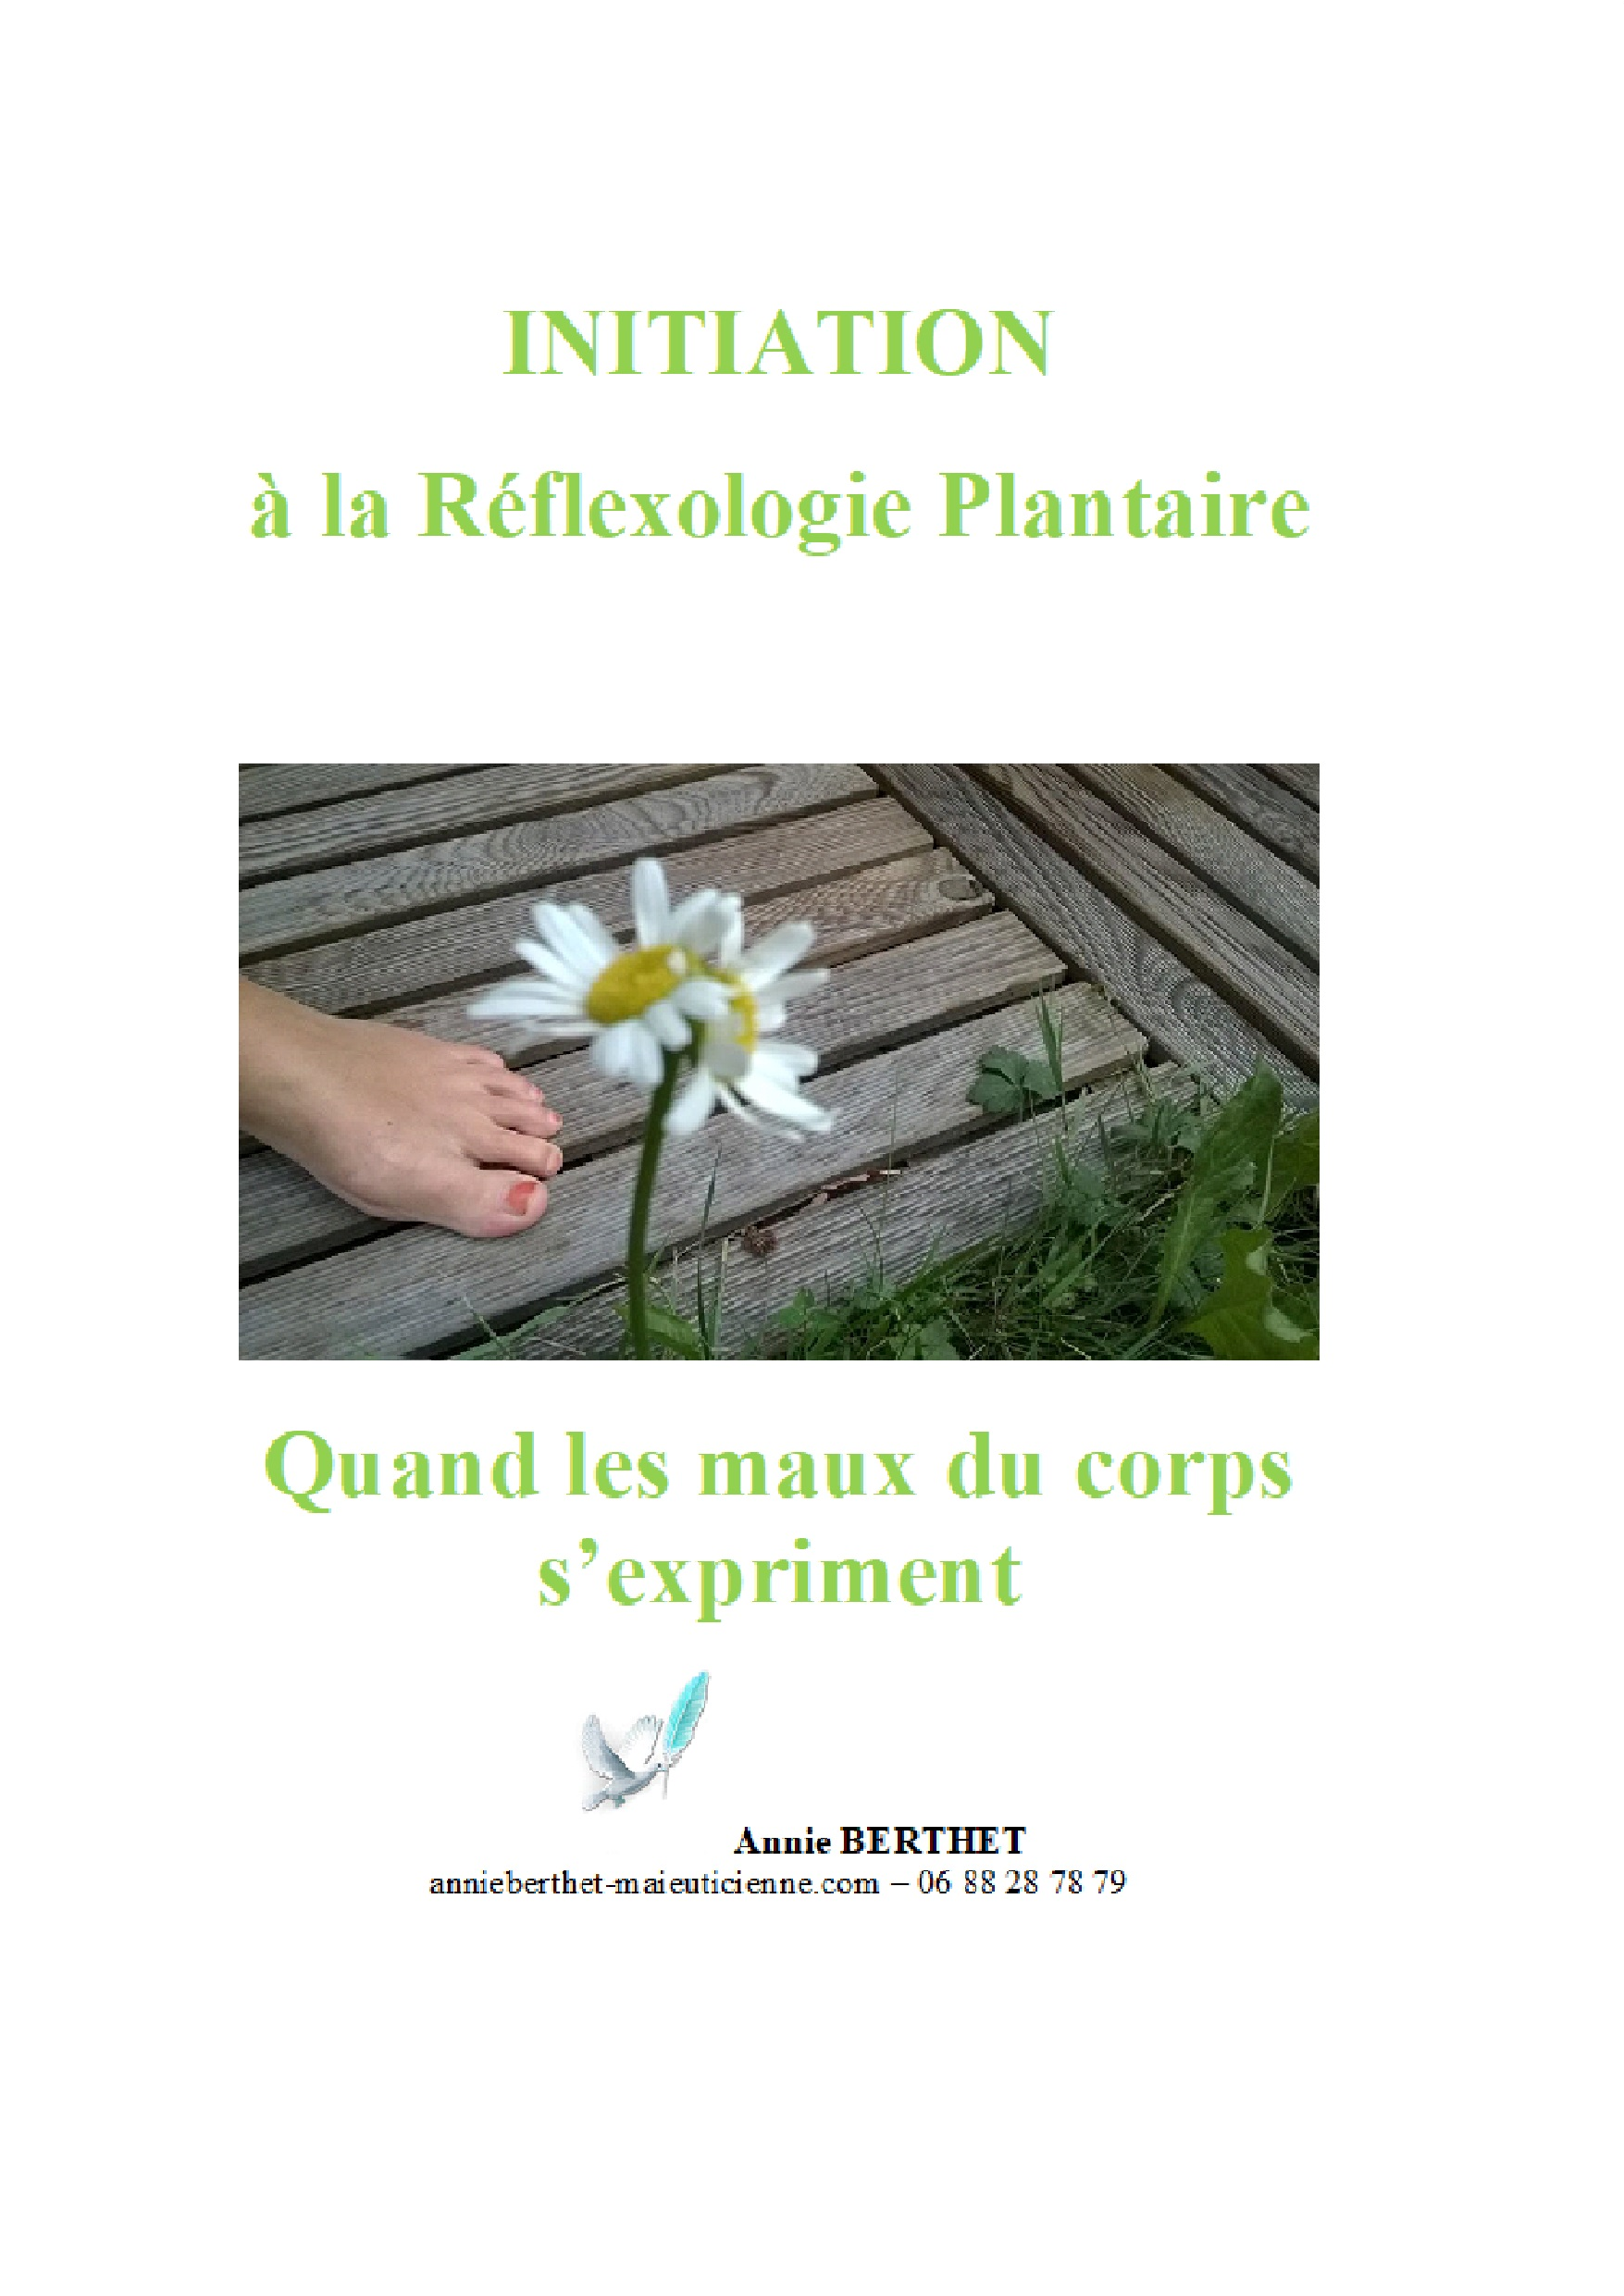 INITIATION à la Réflexologie Plantaire